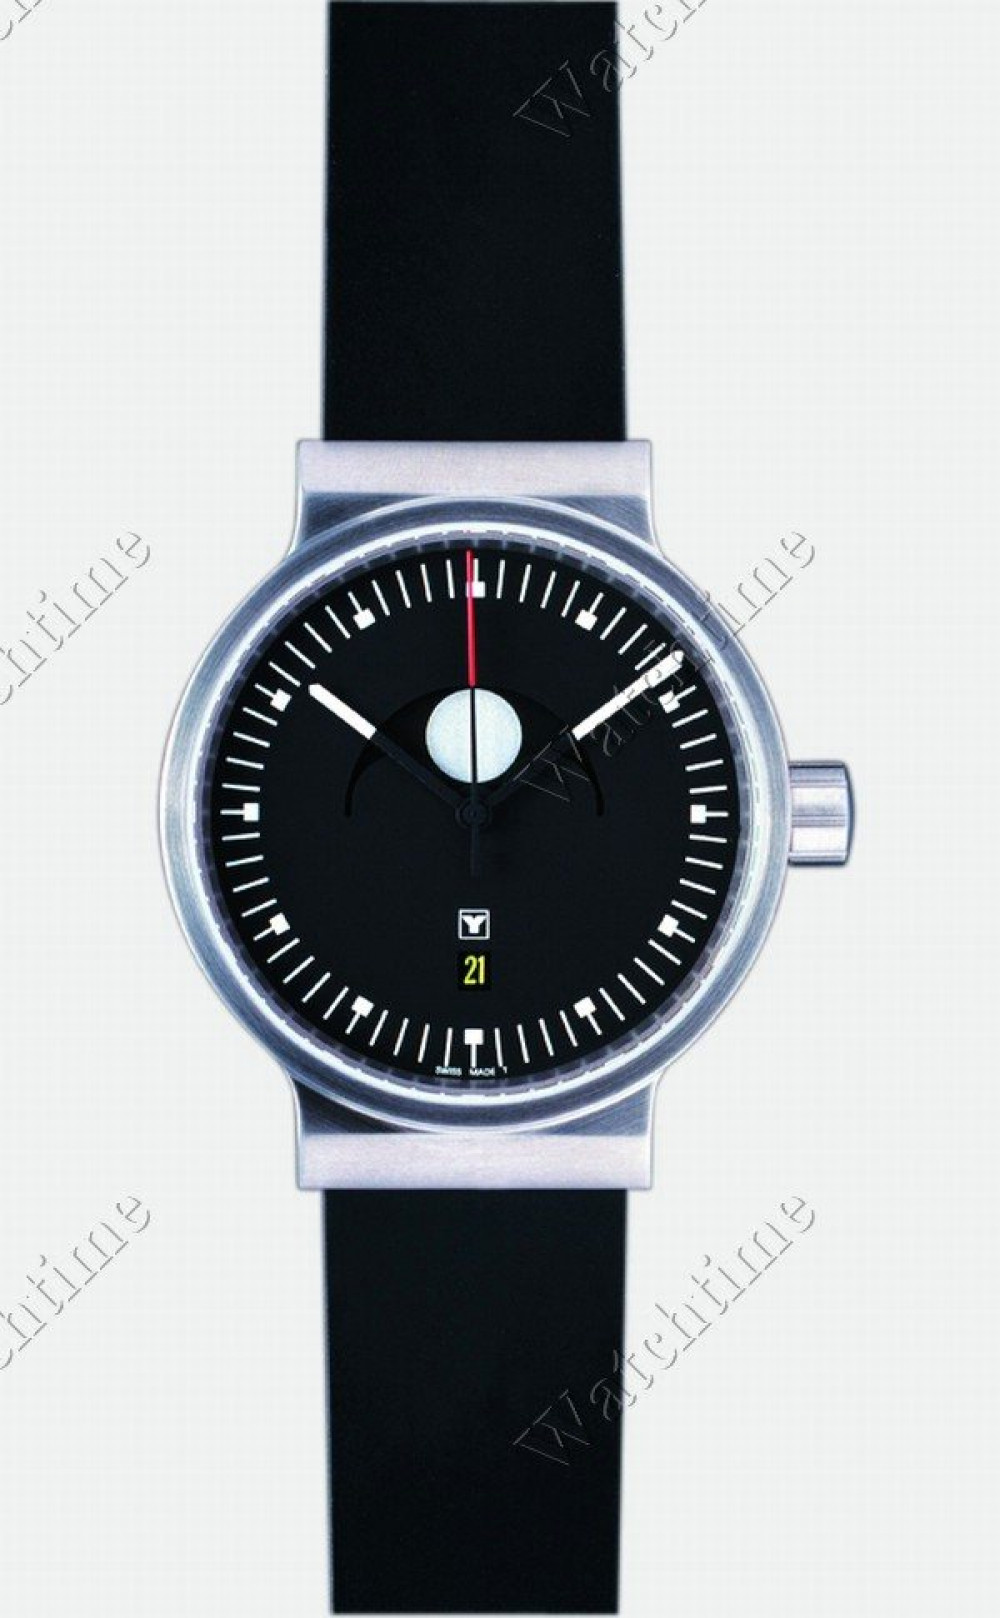 Zegarek firmy Yantar, model Moonphase 12